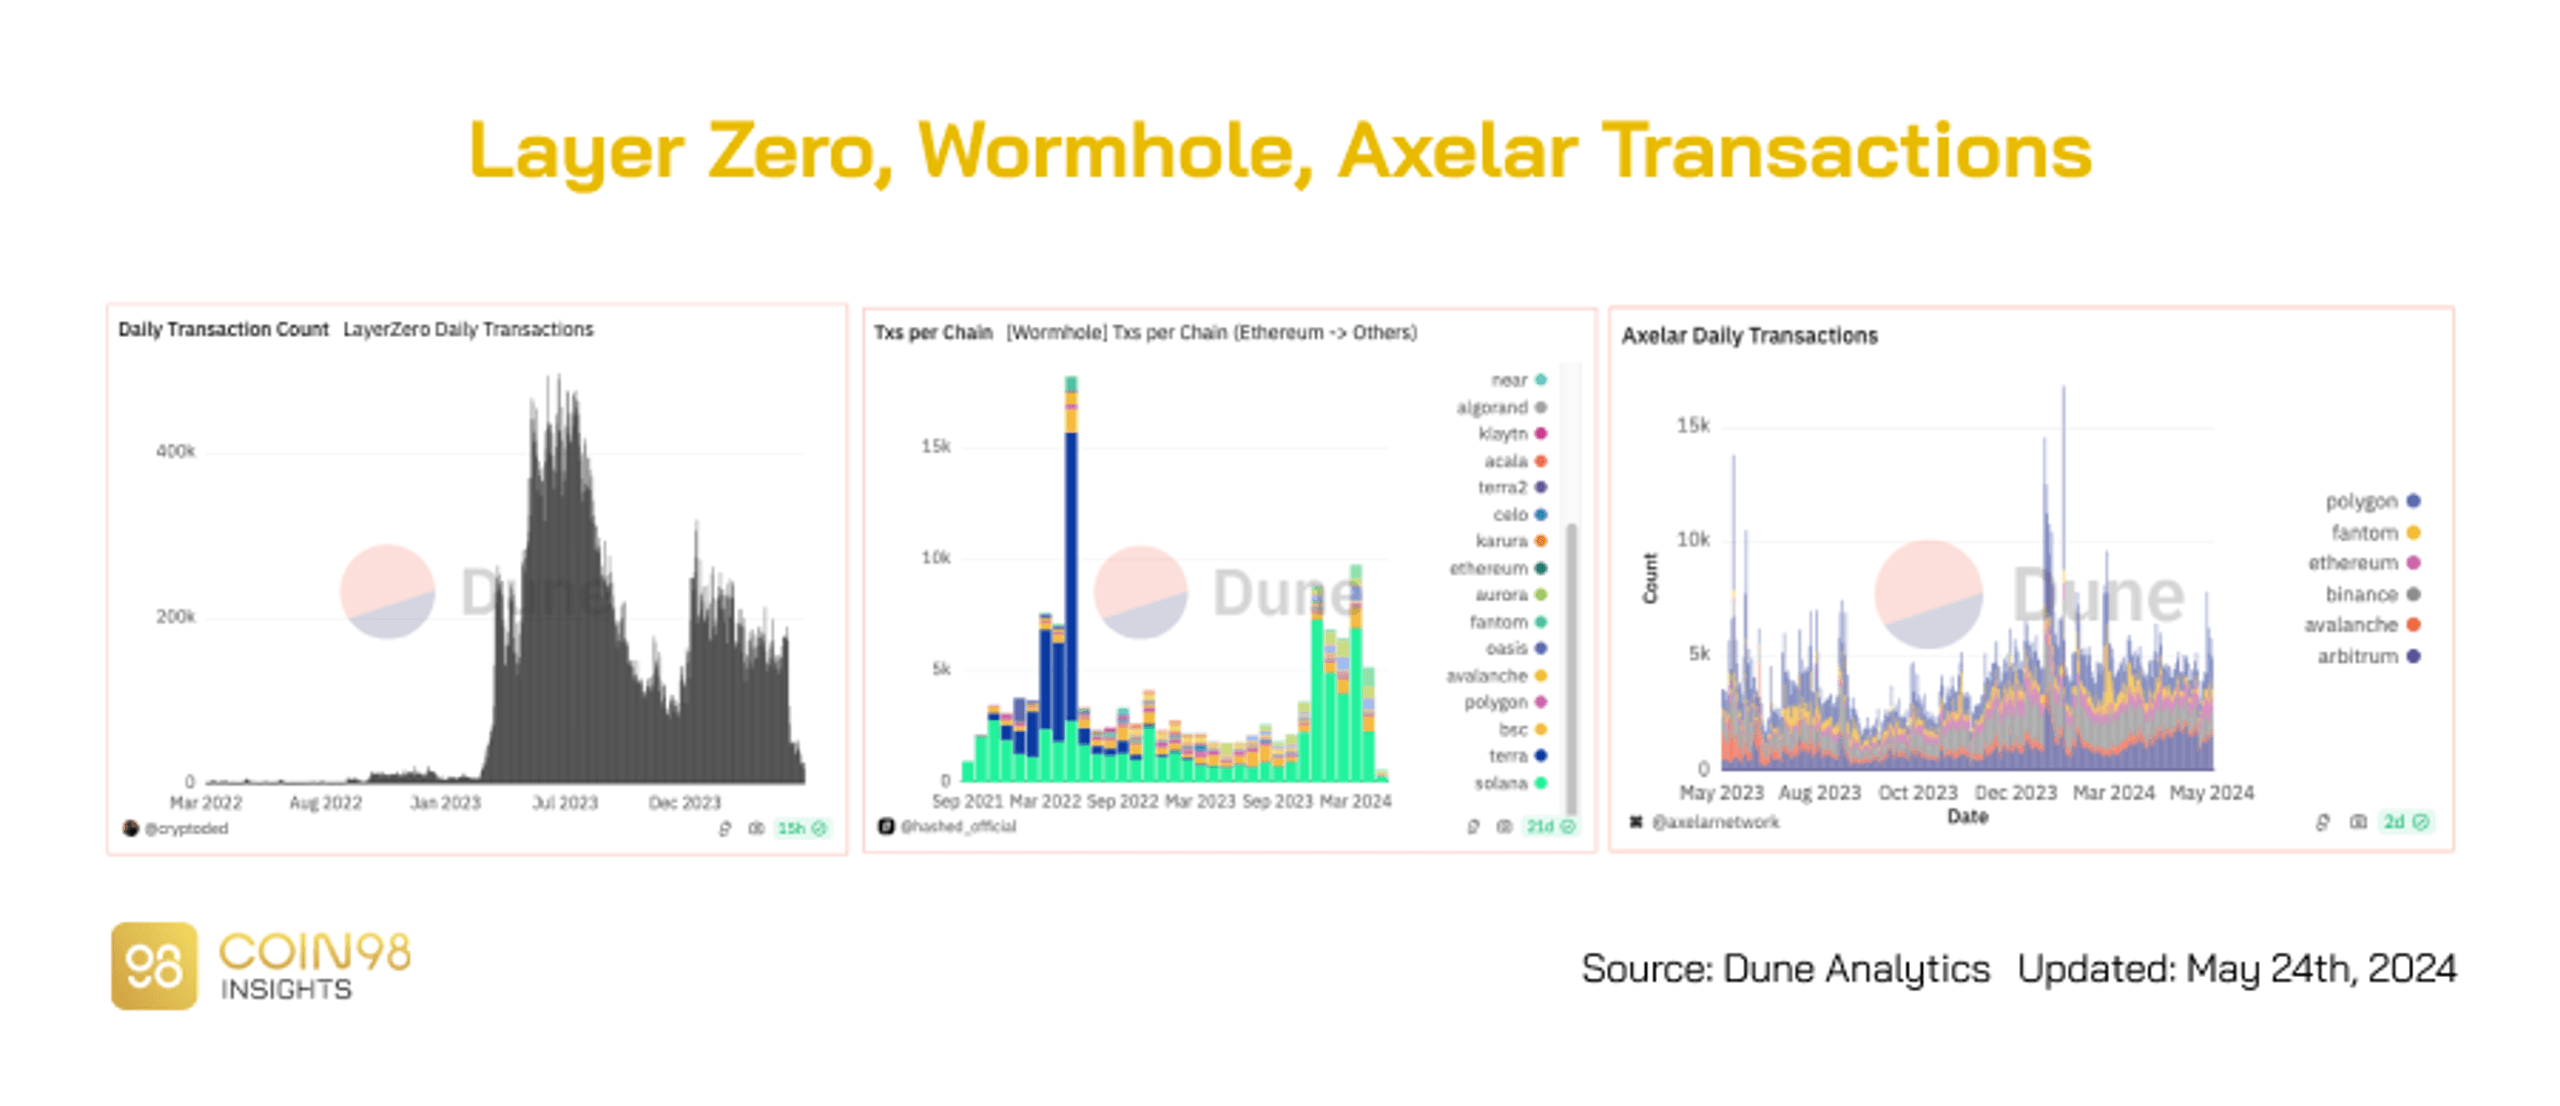 layer zero vs wormhole vs axelar